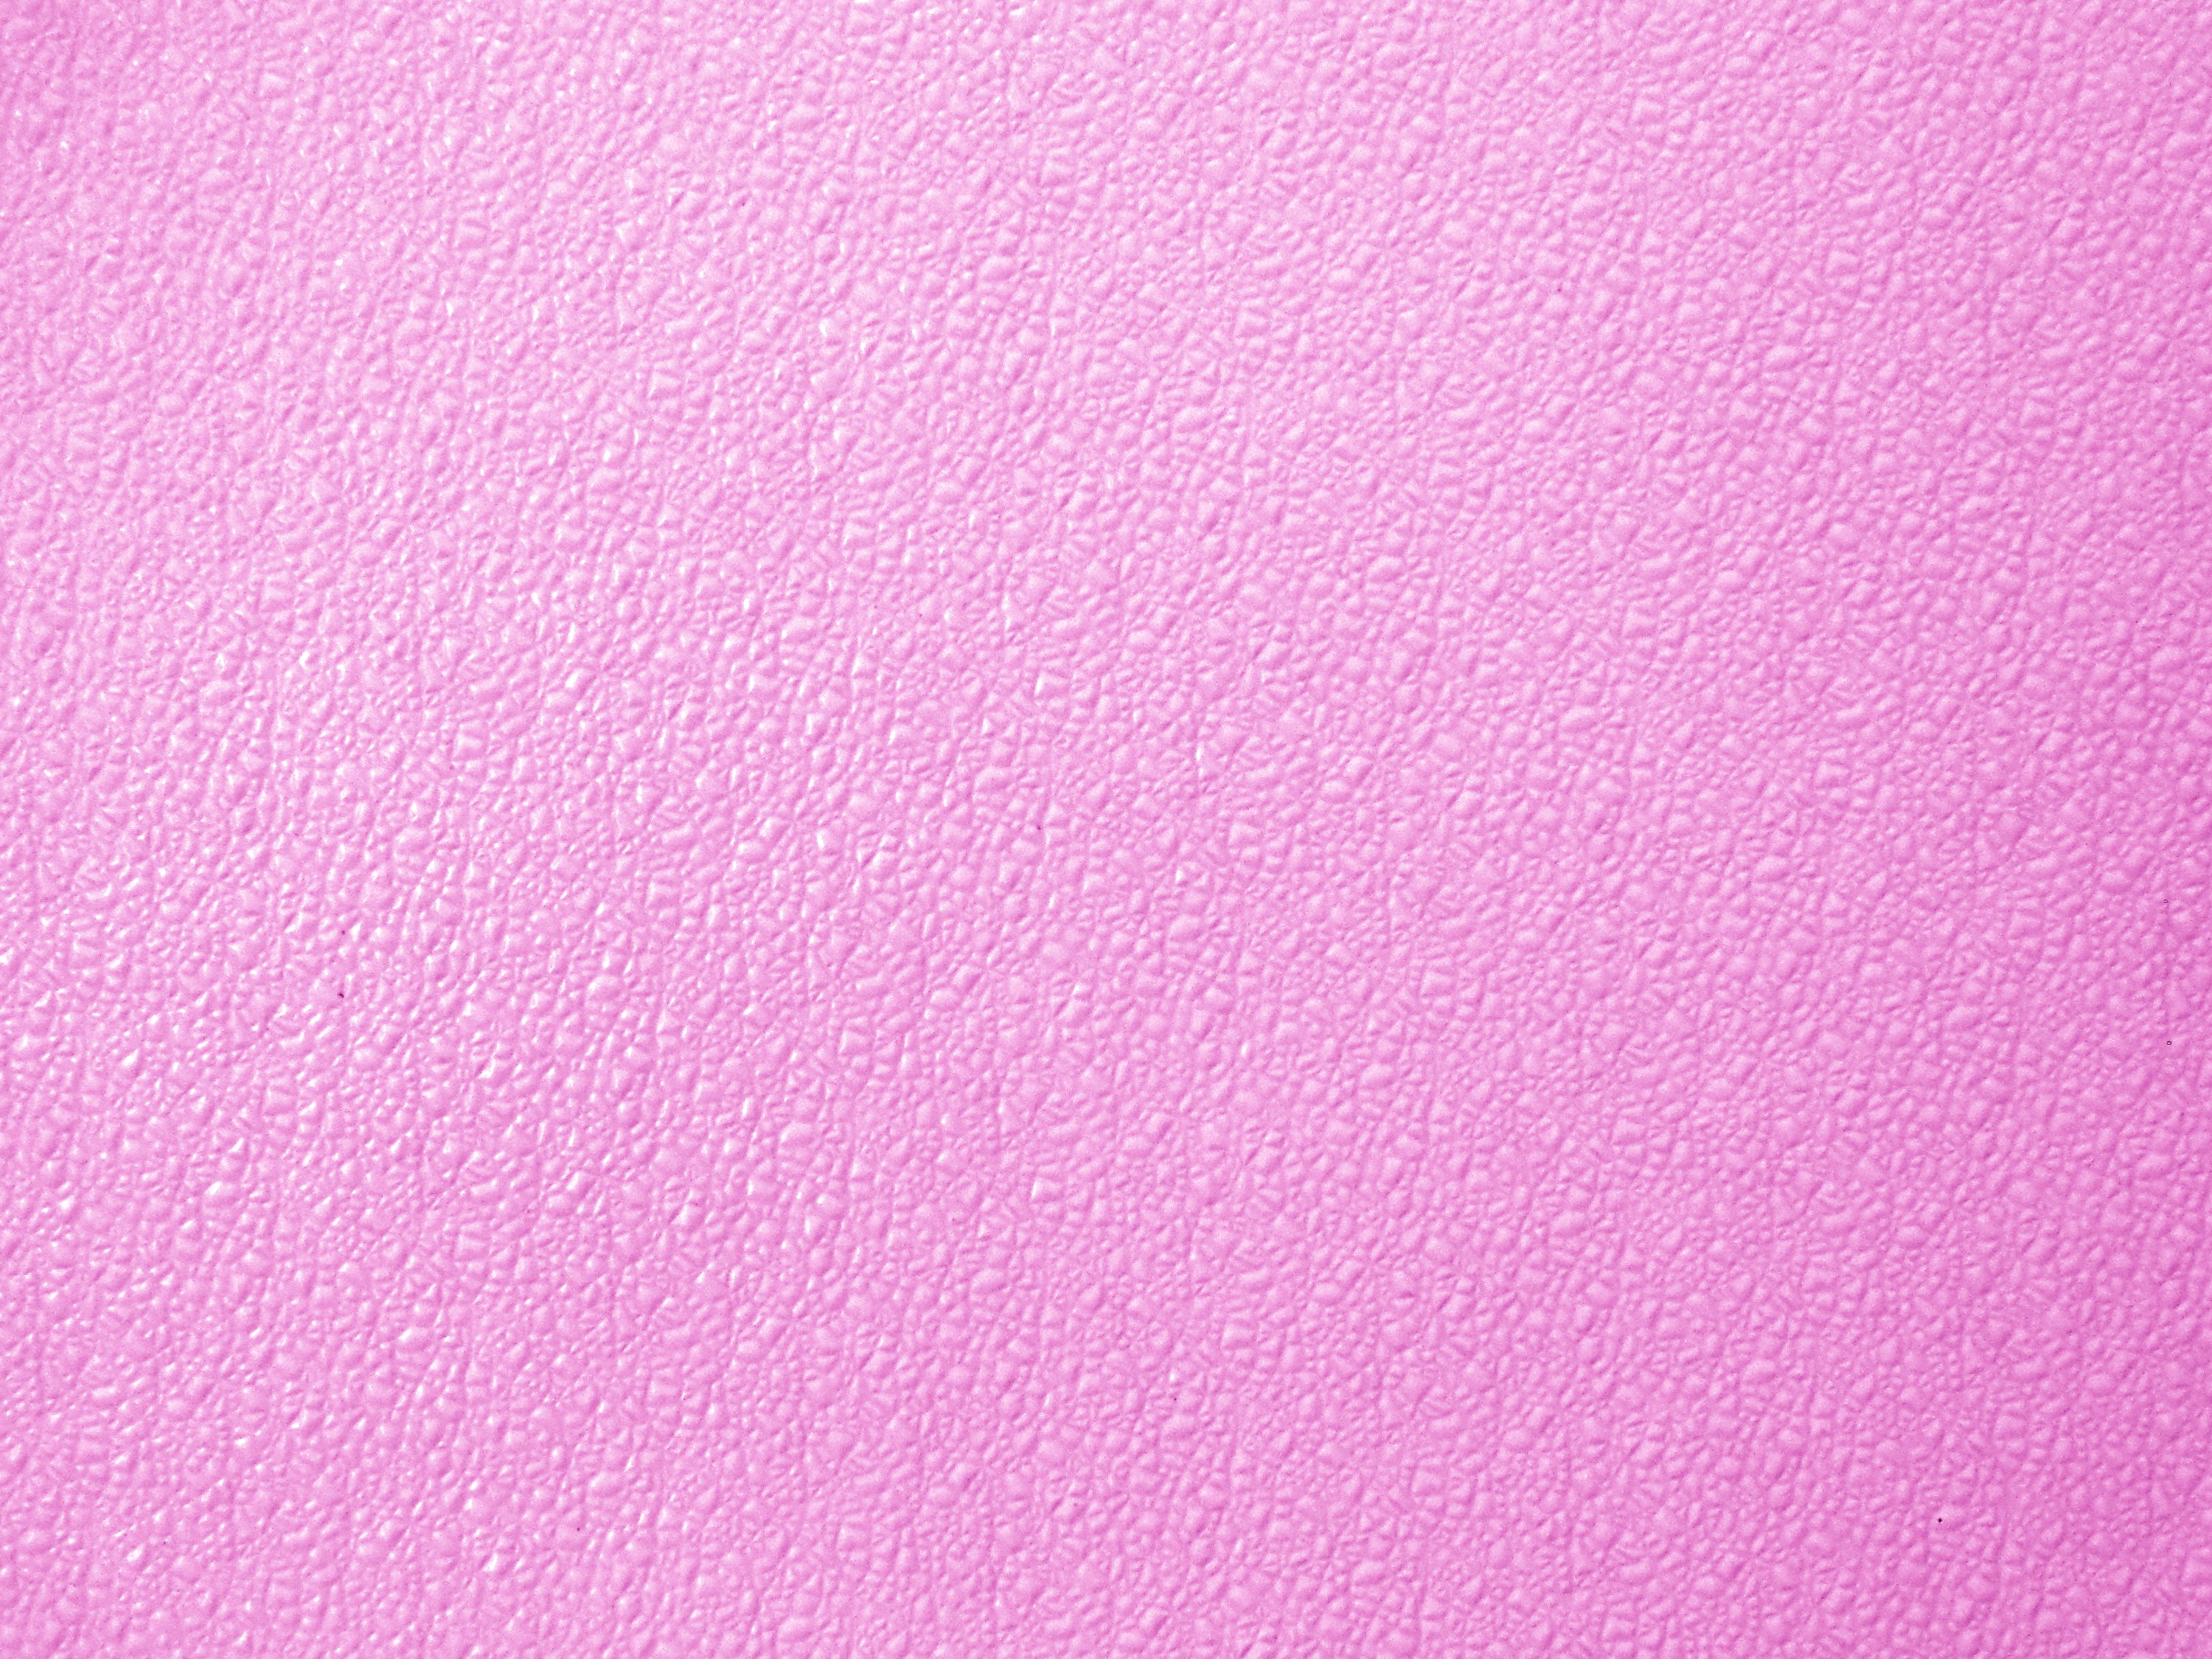 Bộ sưu tập giấy dán tường vải hồng đầy quyến rũ chắc chắn sẽ làm cho bạn một lần nữa đắm mình trong màu hồng thật ngọt ngào. Mẫu giấy này sẽ tạo nên một không gian êm ái và đáng yêu cho phòng khách của bạn đấy. Hãy nhấp chuột để xem ảnh và ghi tức yêu thích cho mình nhé!